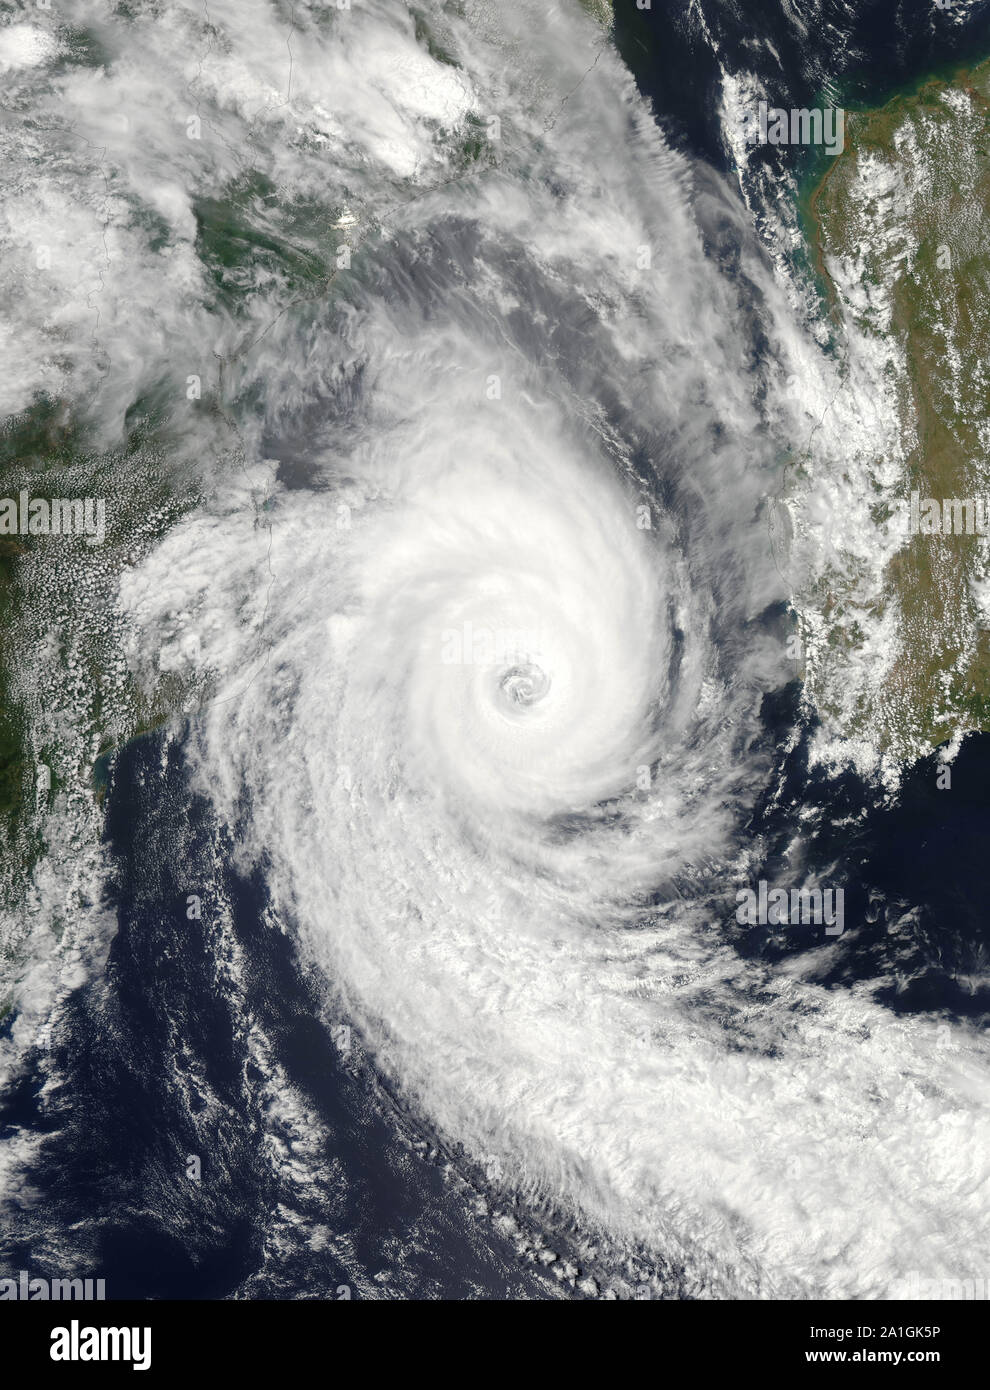 Ciclone tropicale Funso, Oceano Indiano, off costa del Mozambico, vicino al Madagascar, 26 gennaio 2012, dalla NASA/Jeff Schmaltz/DPA Foto Stock